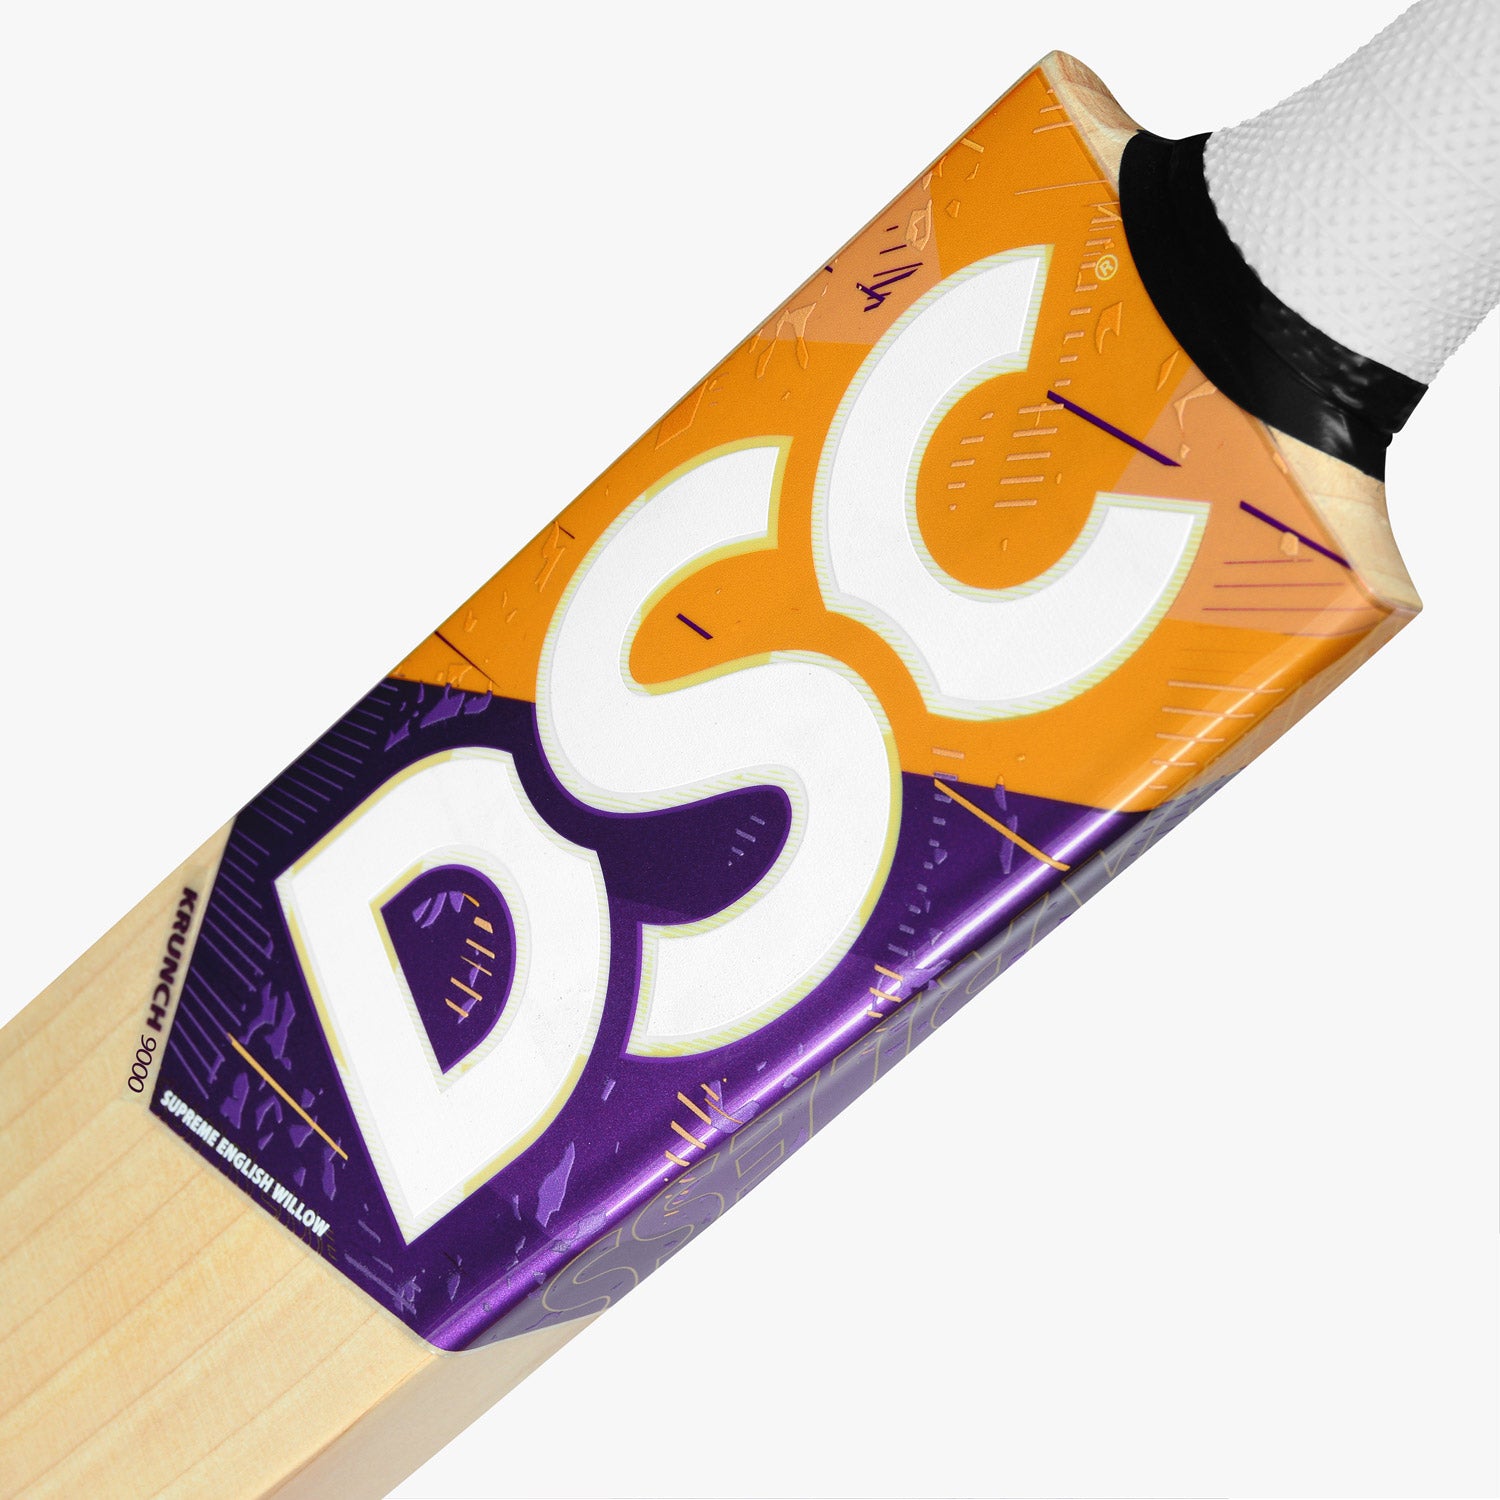 DSC Krunch 9000 Junior Cricket Bat